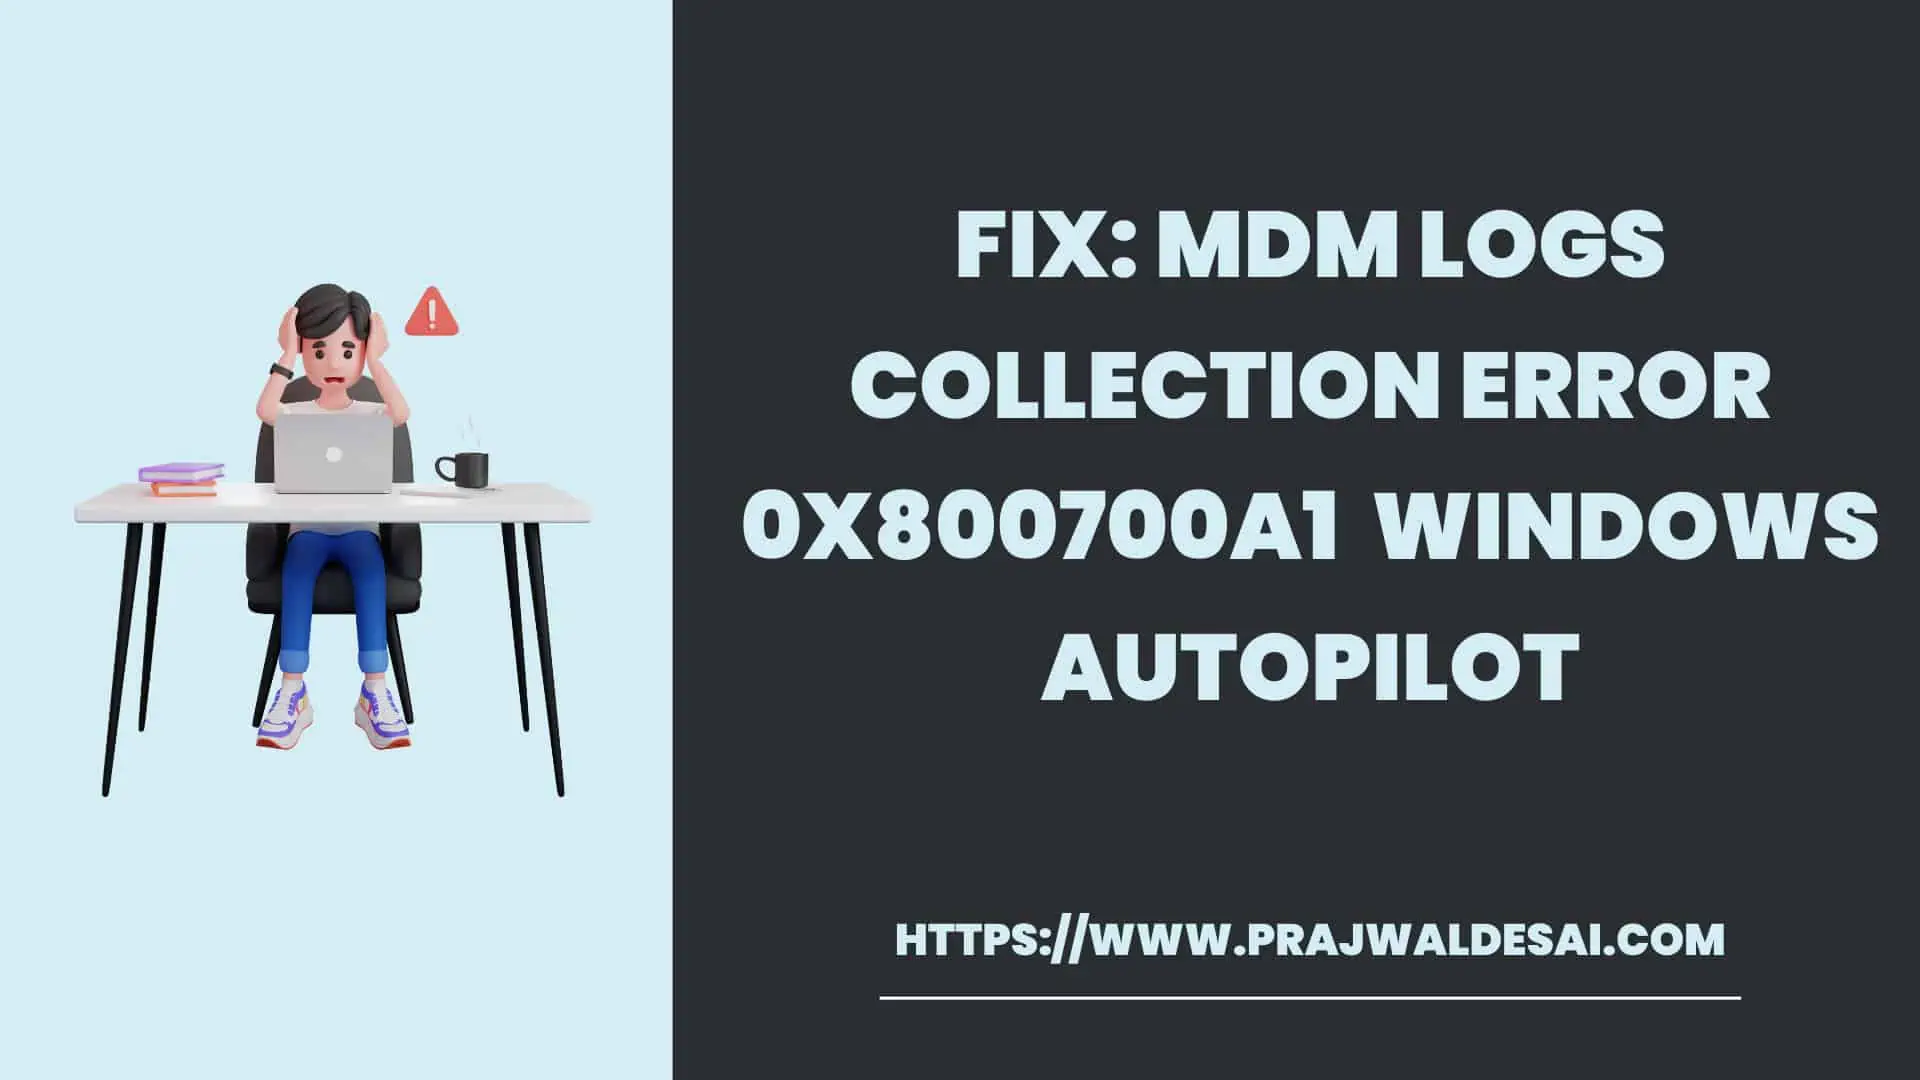 Windows Autopilot MDM日志收集错误0x800700a1 .使用实例